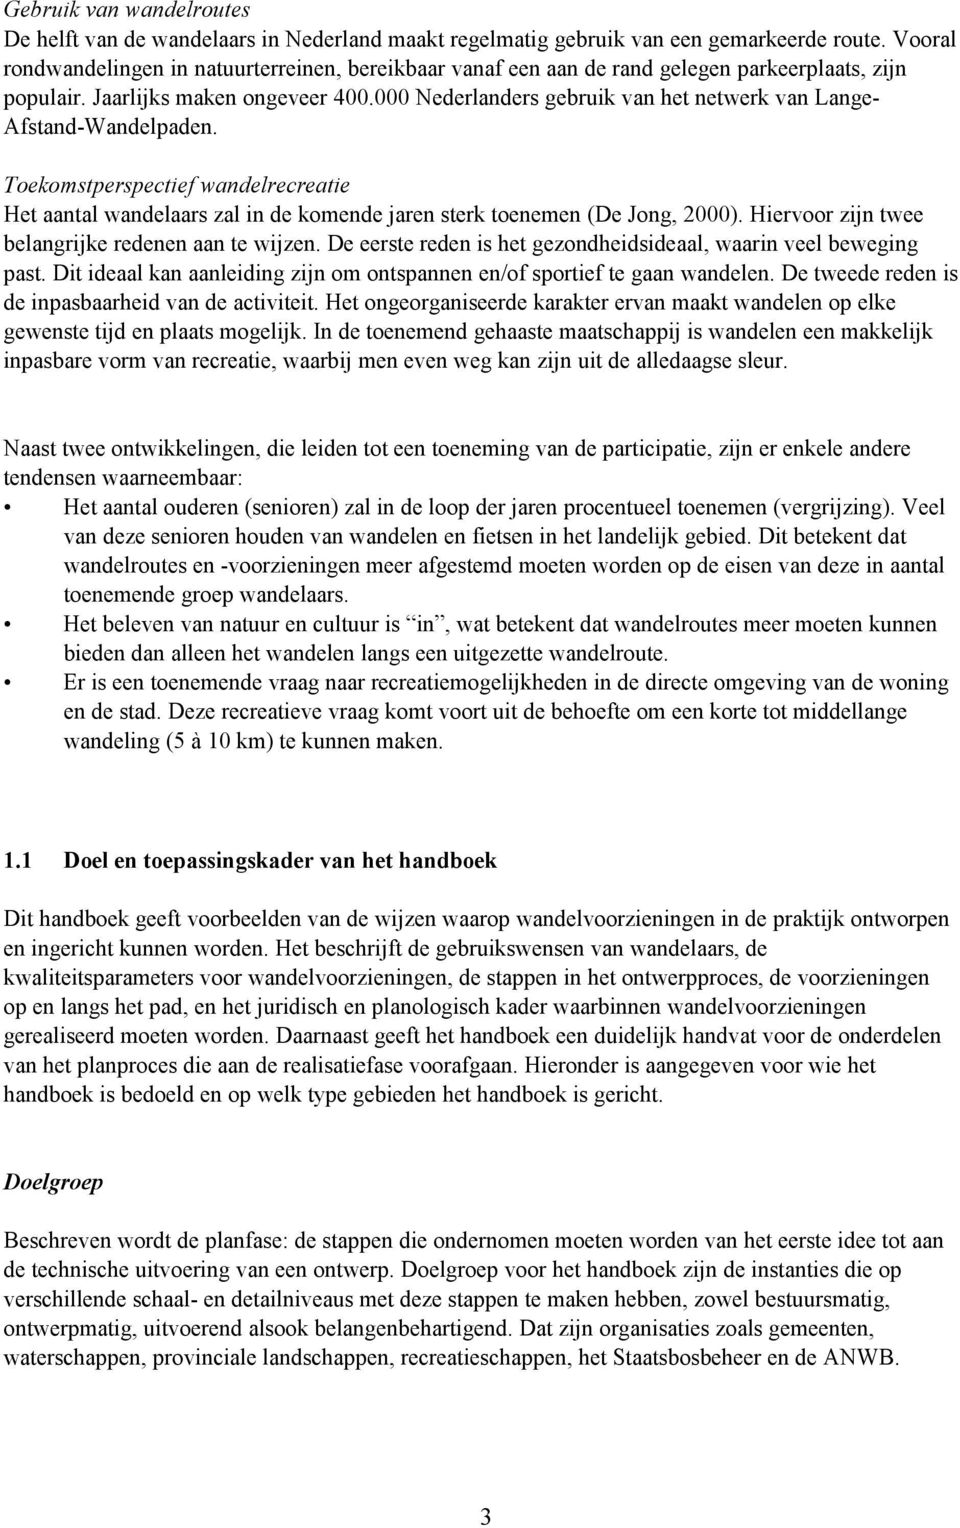 000 Nederlanders gebruik van het netwerk van Lange- Afstand-Wandelpaden. Toekomstperspectief wandelrecreatie Het aantal wandelaars zal in de komende jaren sterk toenemen (De Jong, 2000).